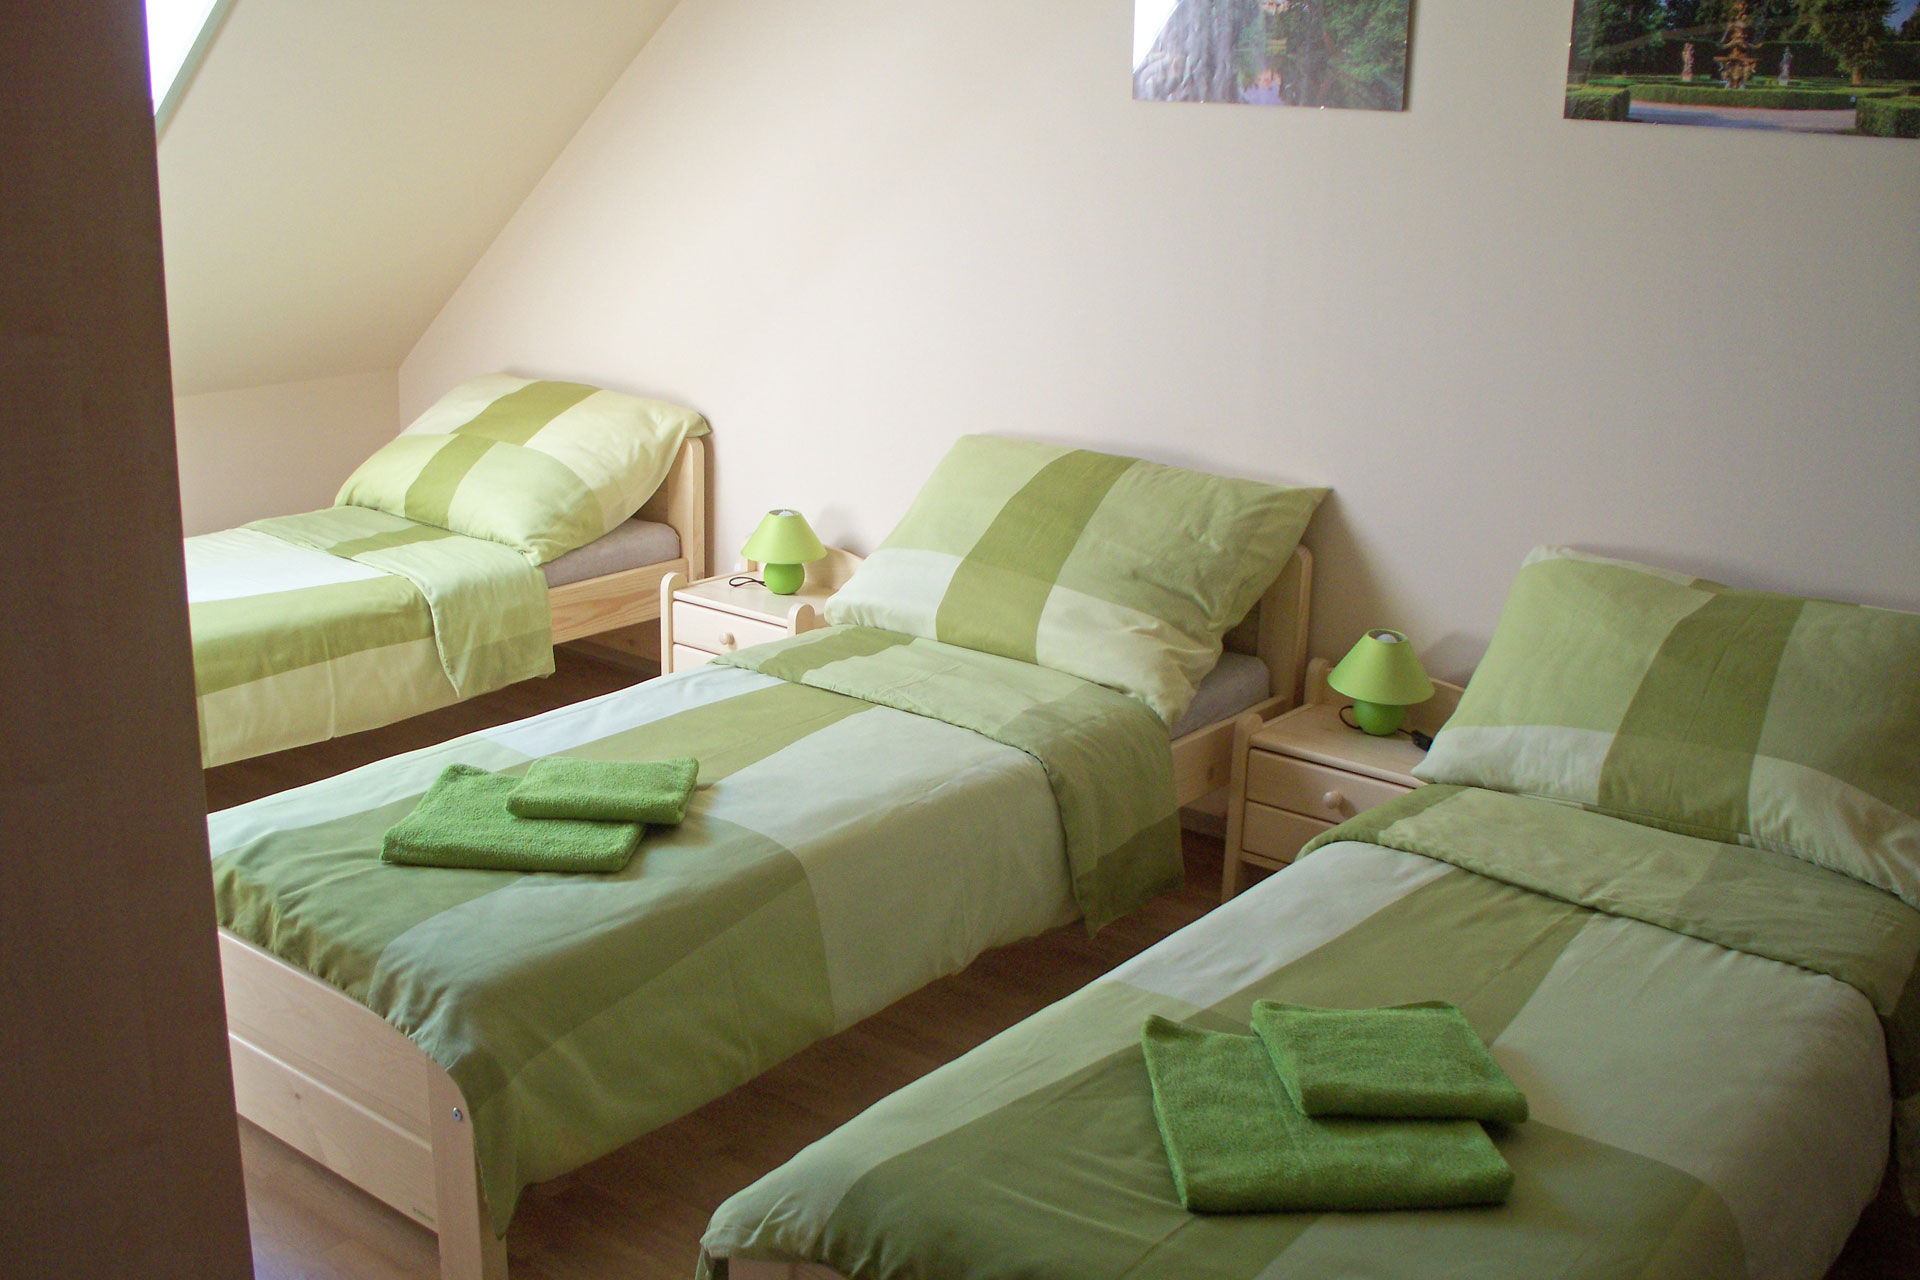 Room 2 - Beds